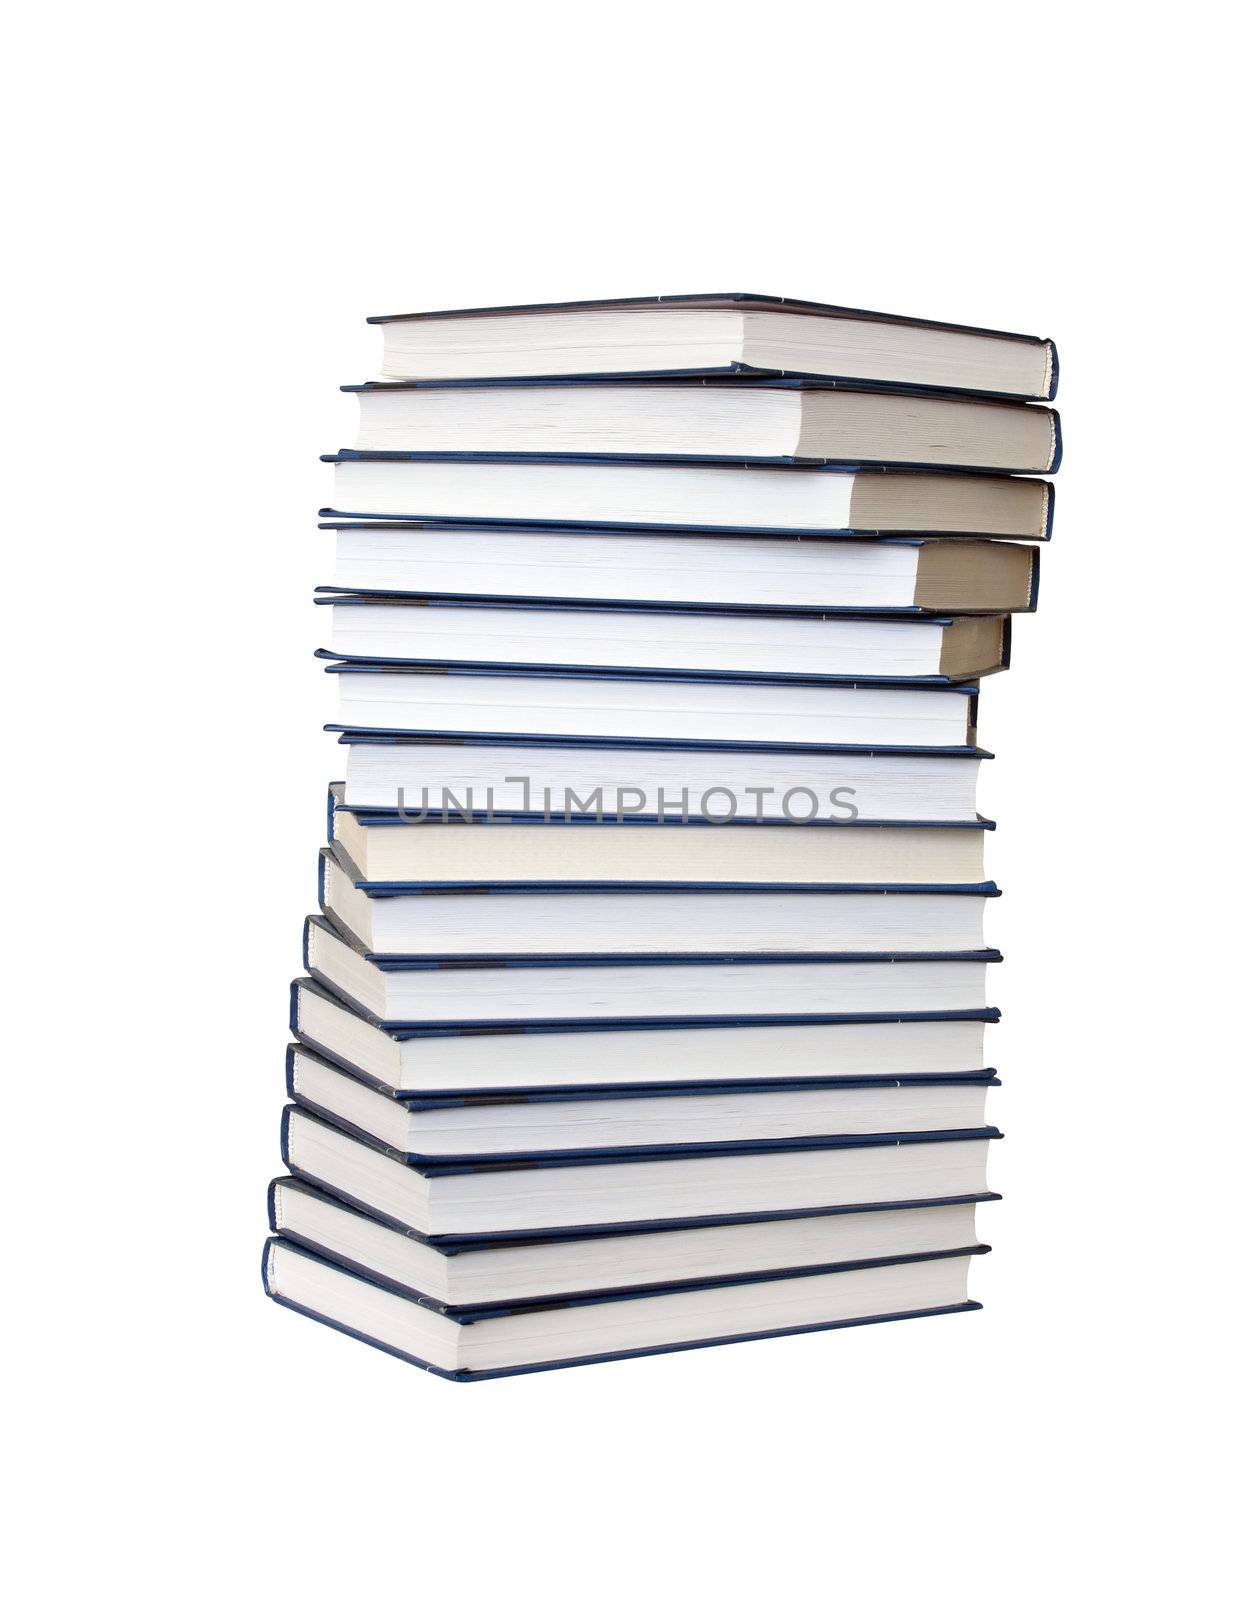 Stack Of Books by kvkirillov